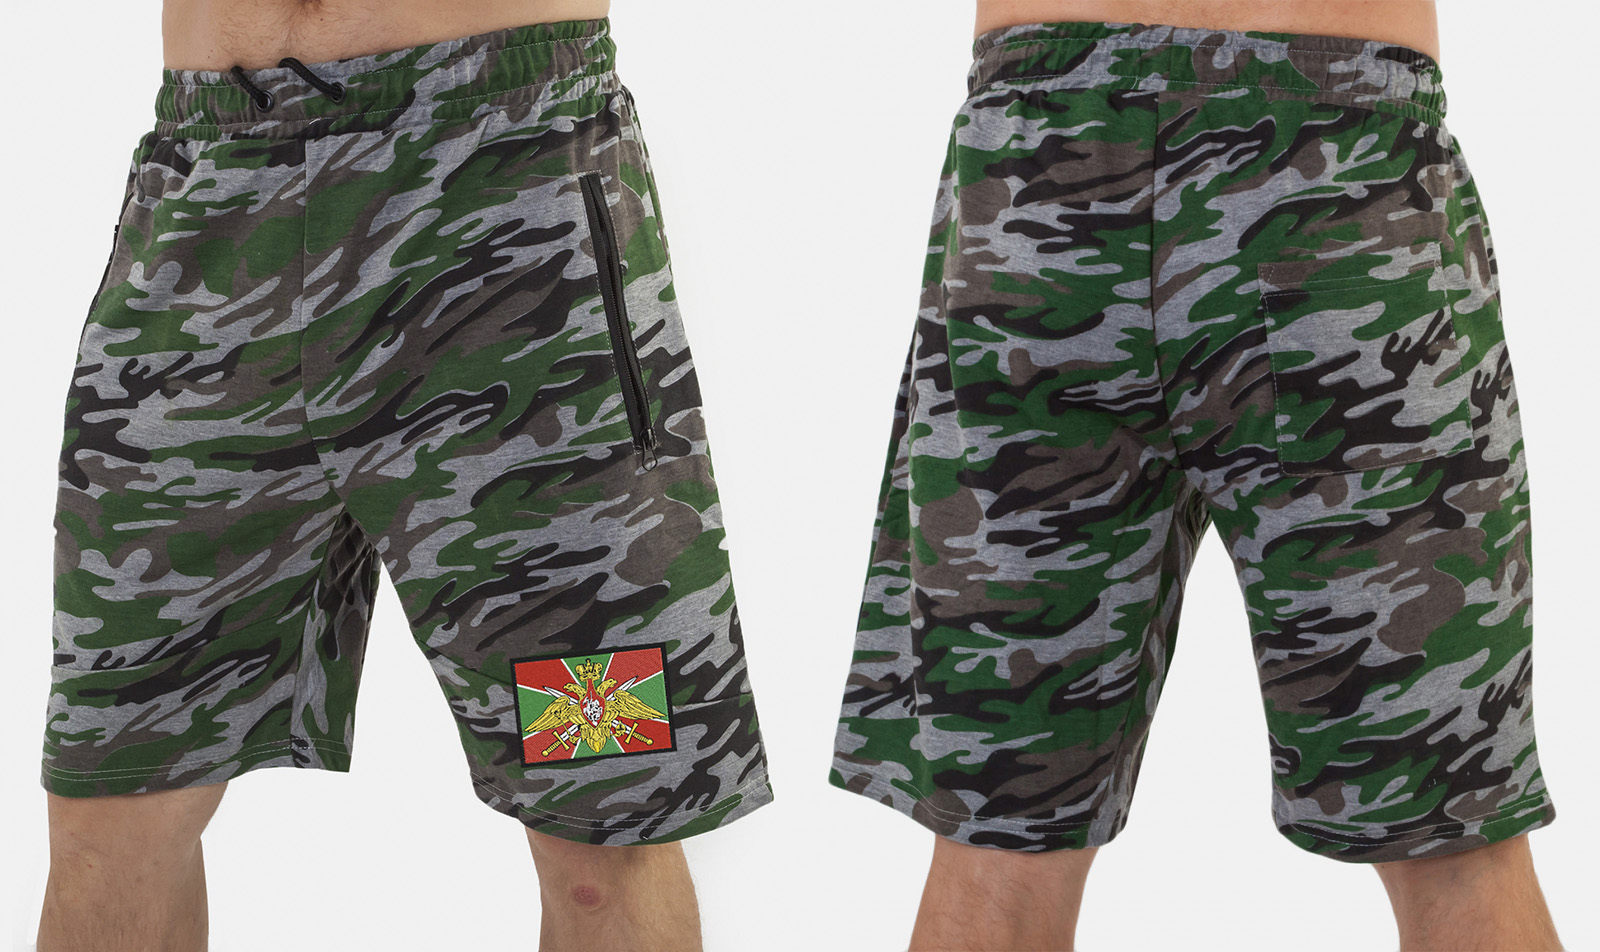 Мужские армейские шорты онлайн недорого с доставкой